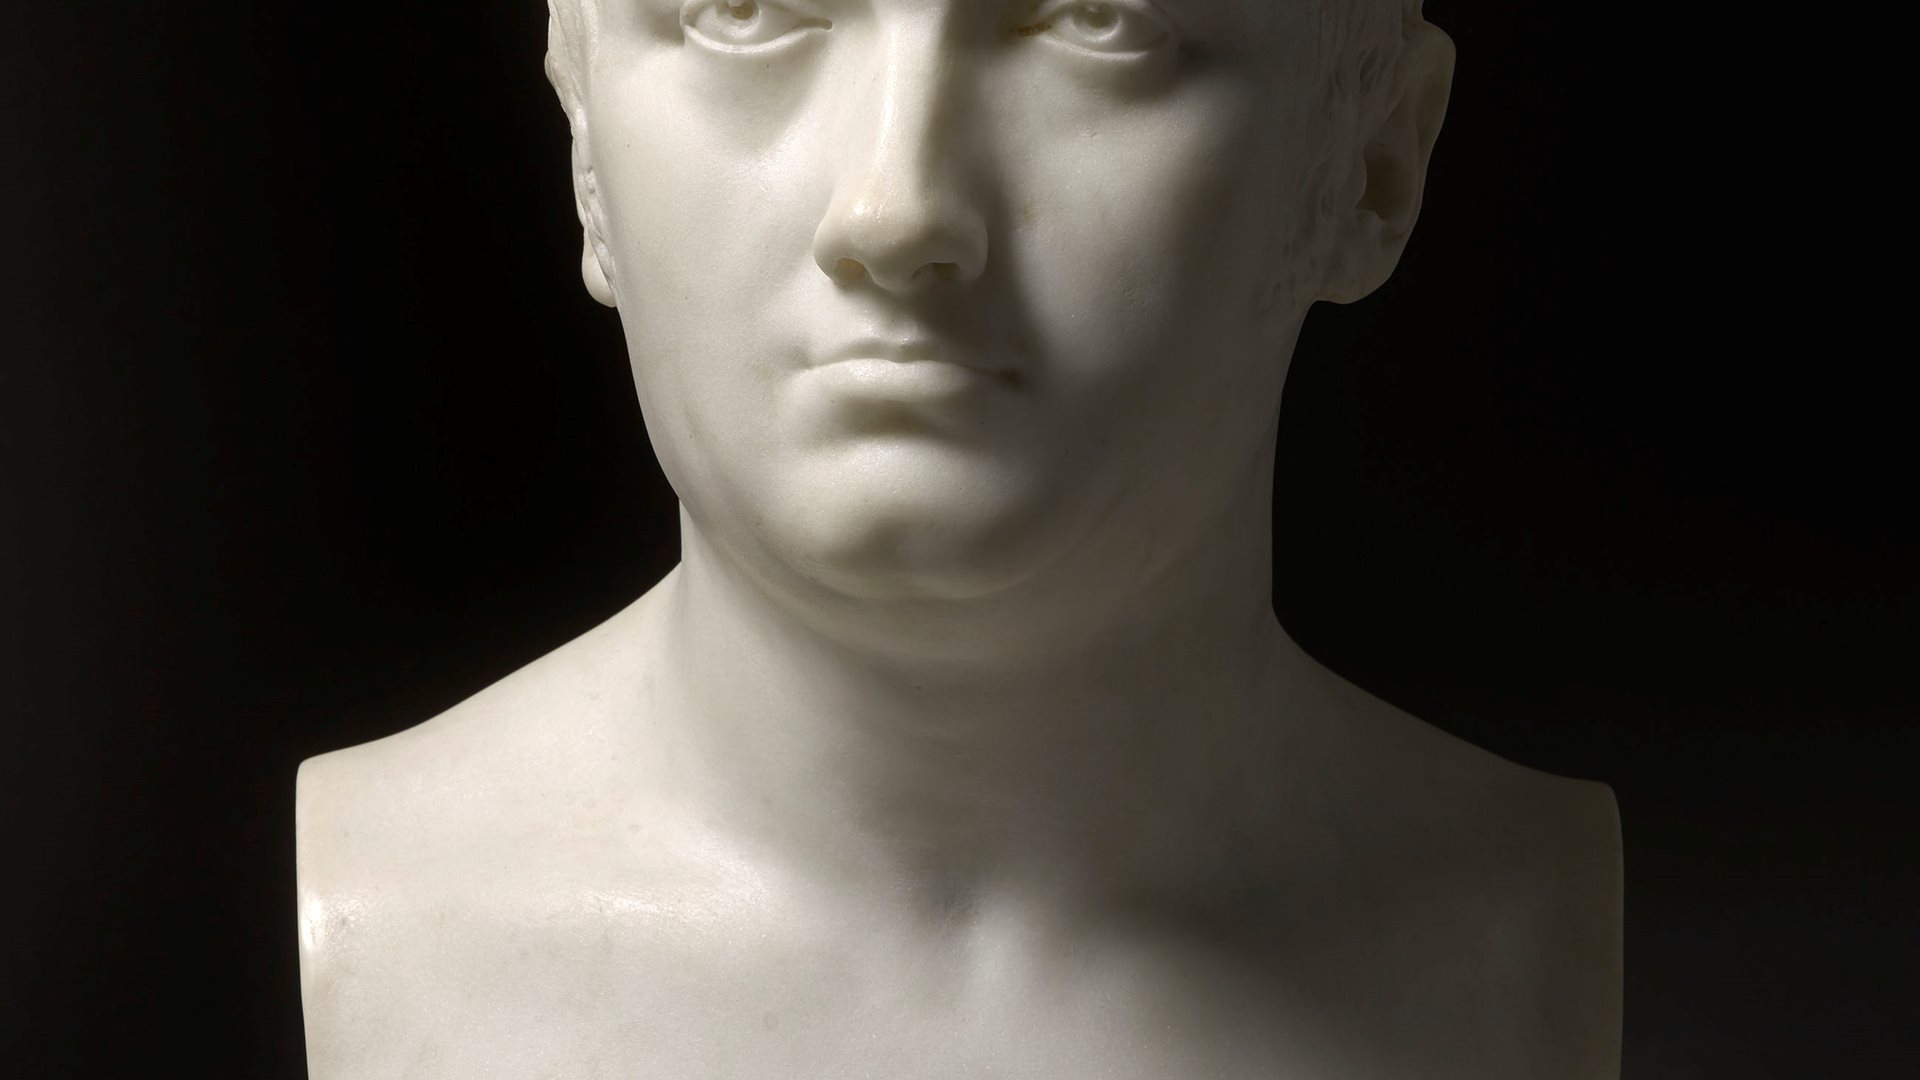 Herm bust of Maréchal Jean-de-Dieu Soult, Duke of Dalmatia (1769-1851)
